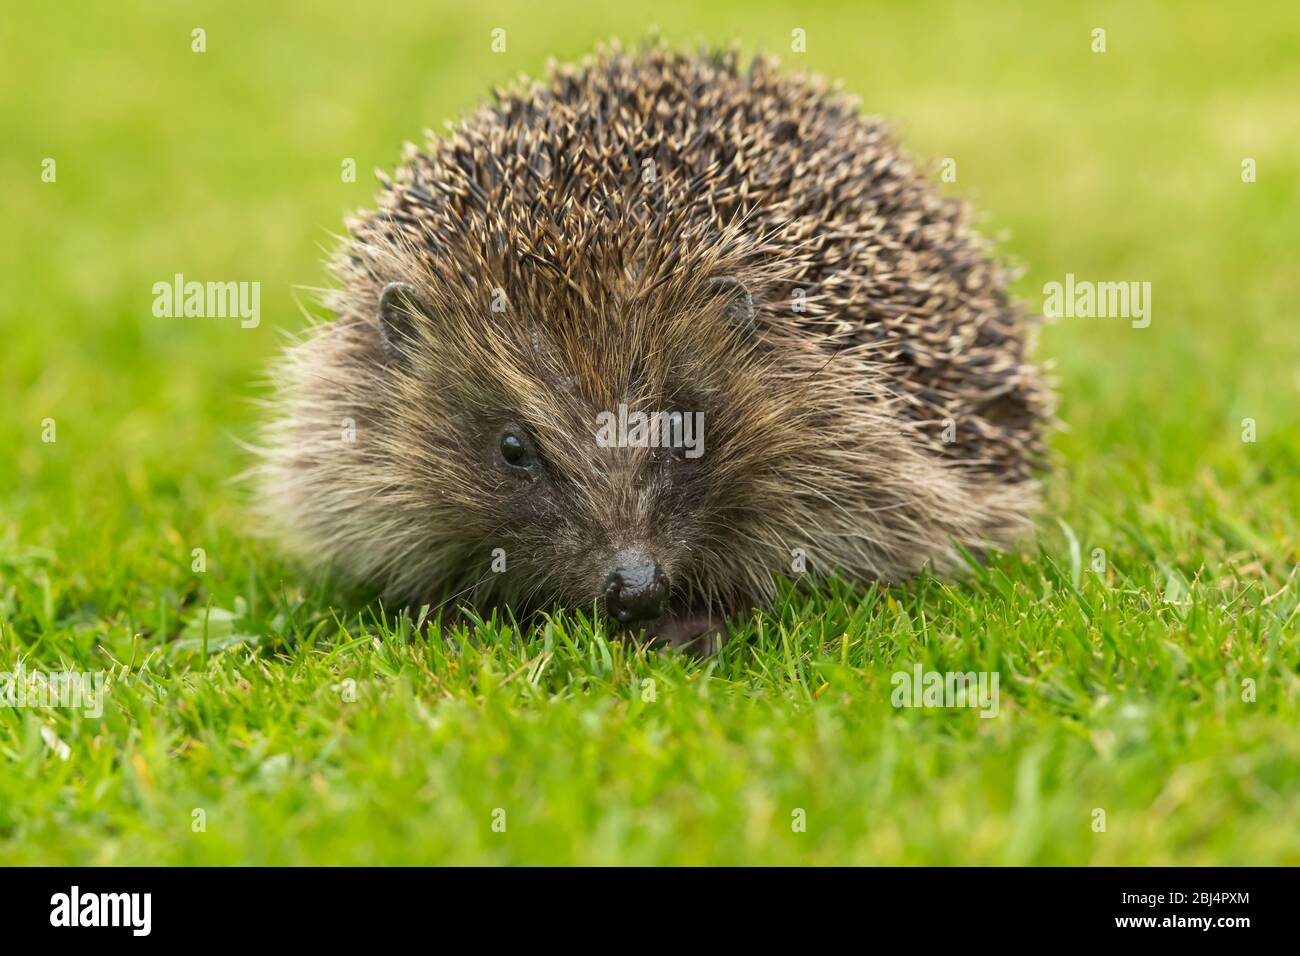 Hedgehog (nome scientifico: Erinaceus Europaeus). Adulto, riccio selvatico in habitat naturale giardino, di fronte su prato verde erba. Orizzontale Foto Stock